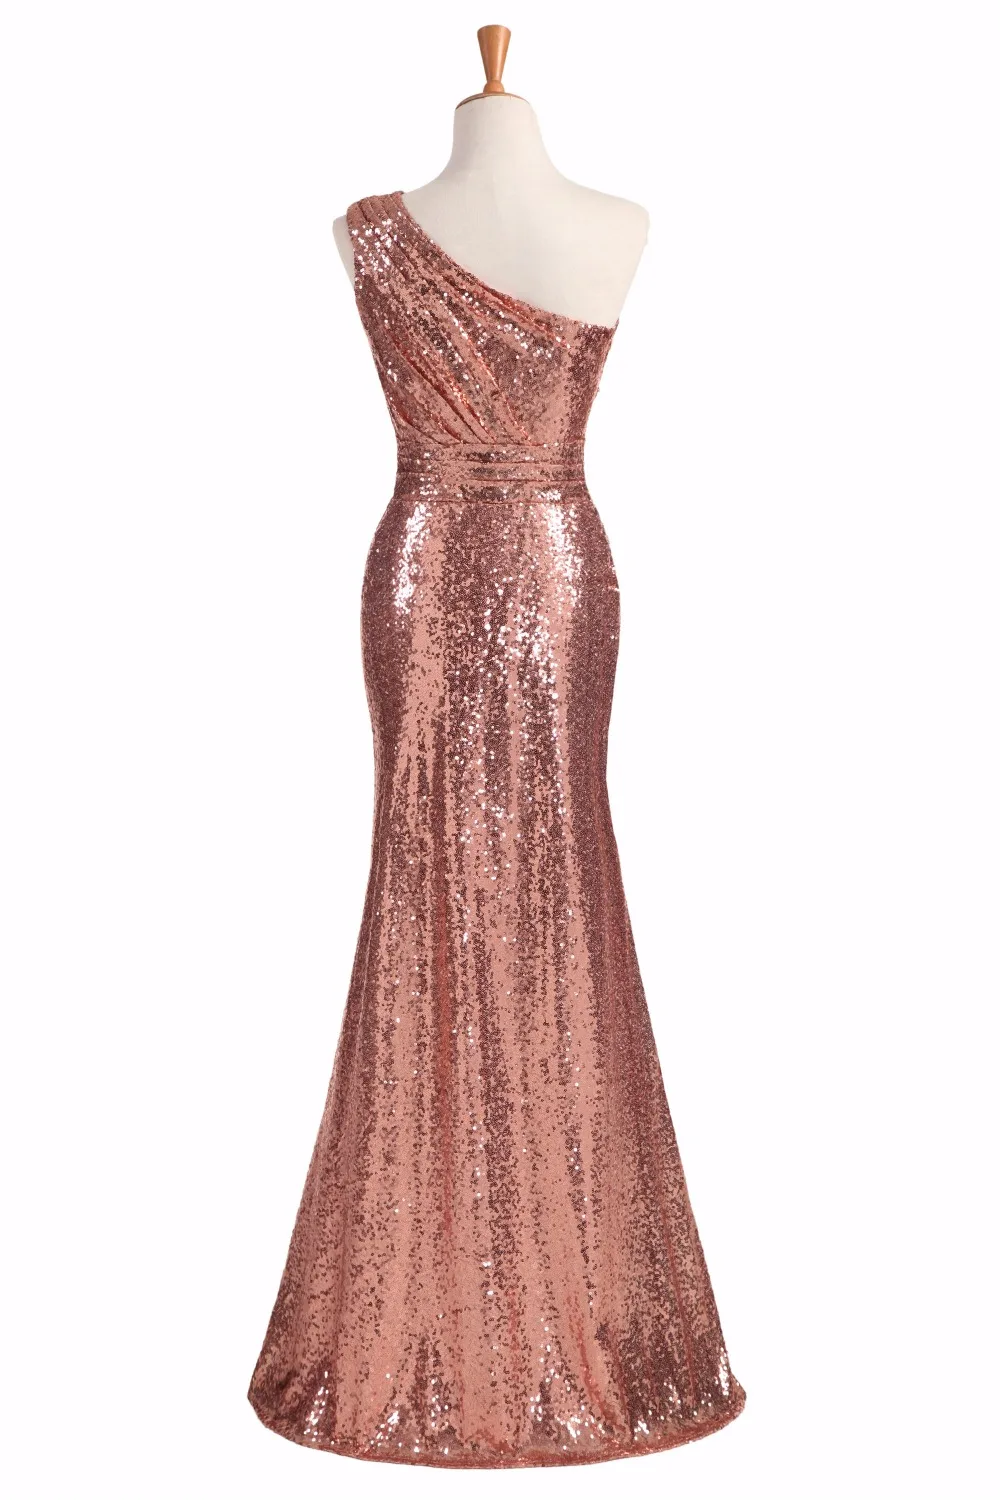 Блестящее платье для подружки невесты розовое золото 2020 винное красное синее на